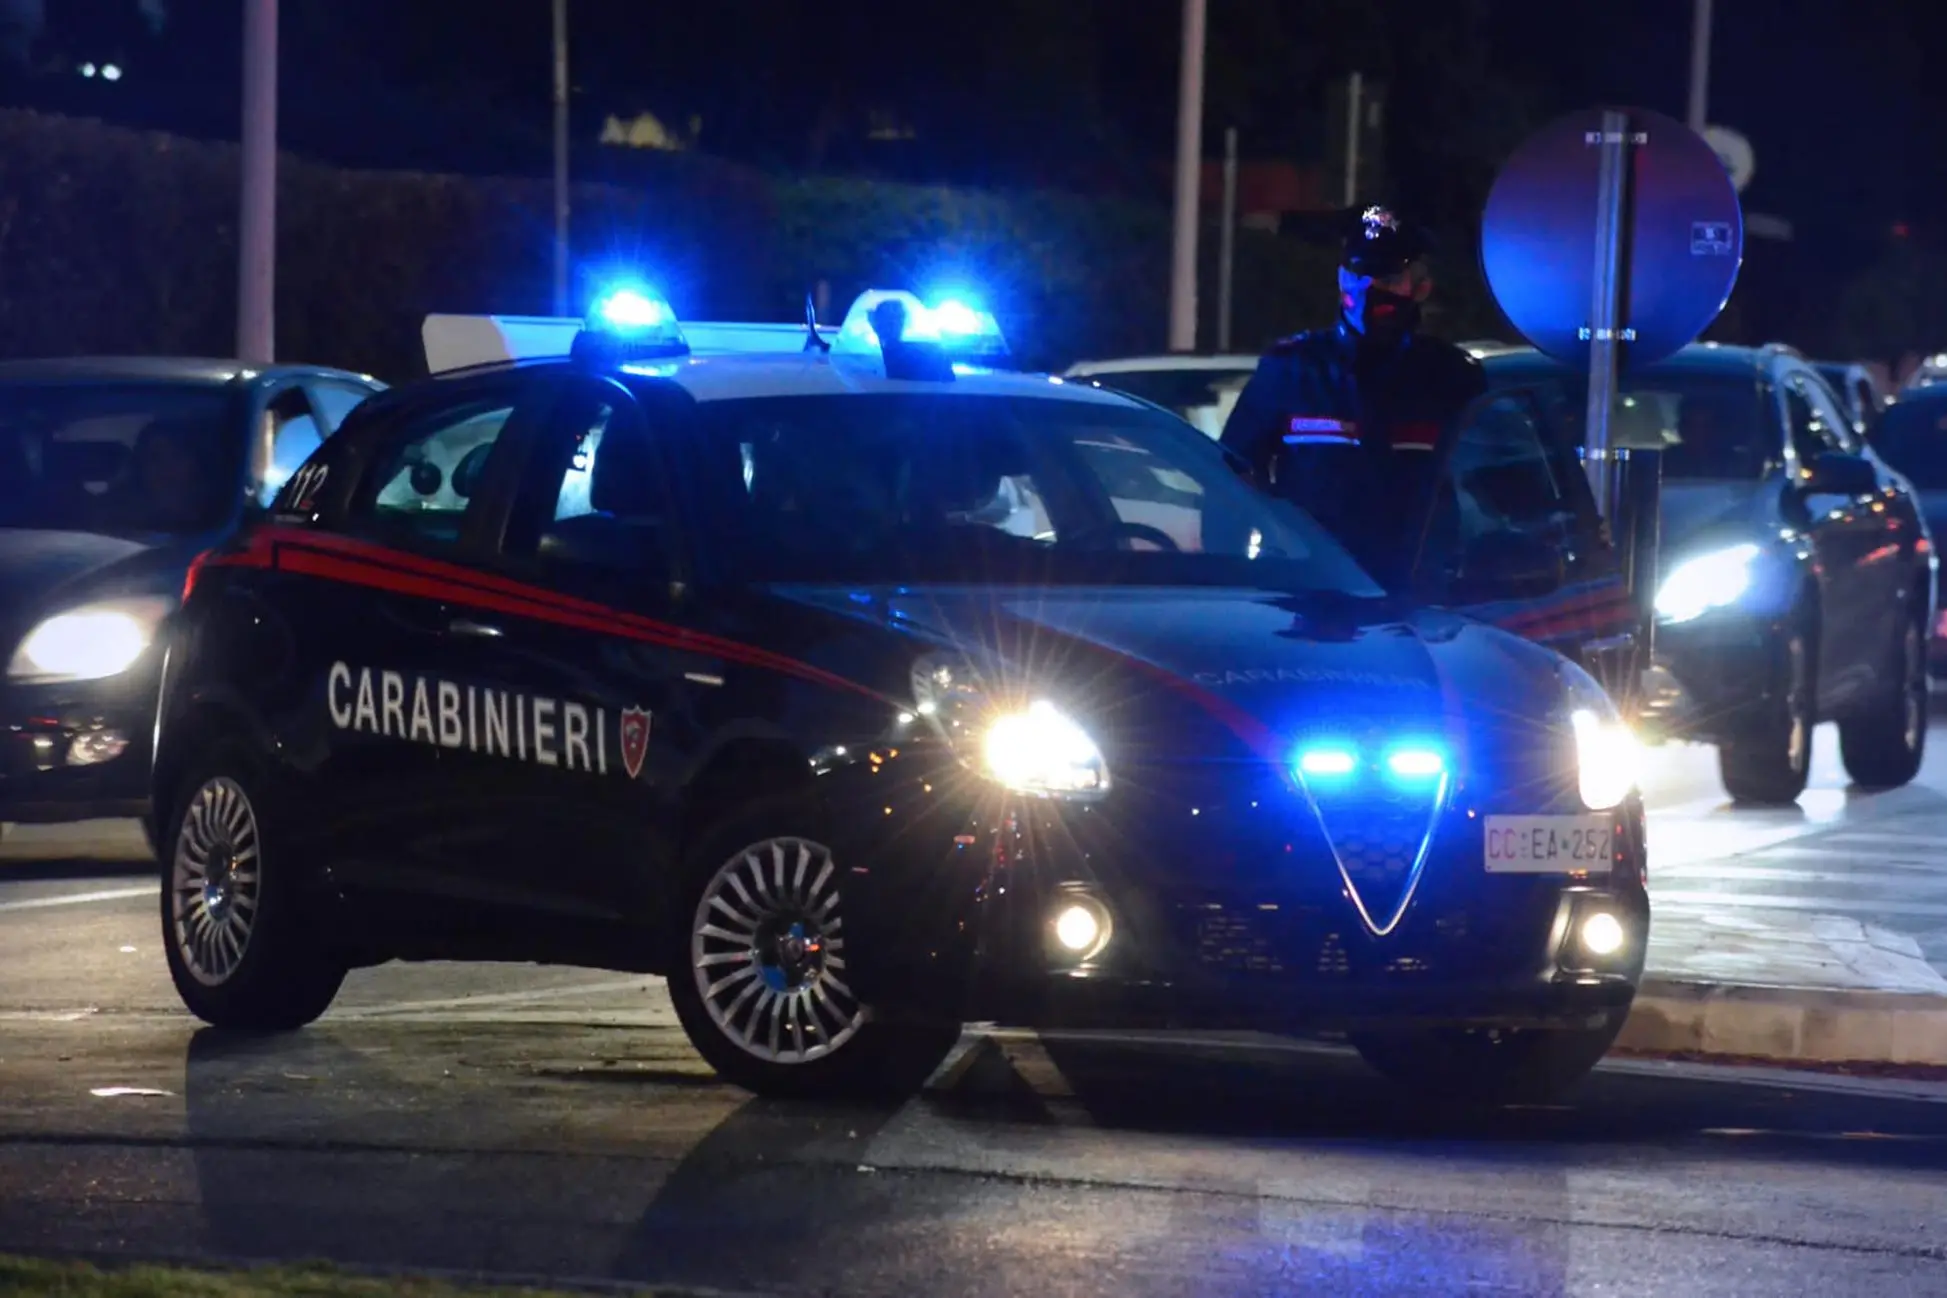 Is Mirrionis, minacce di morte ai dipendenti di un bar: 23enne in arresto (foto carabinieri)